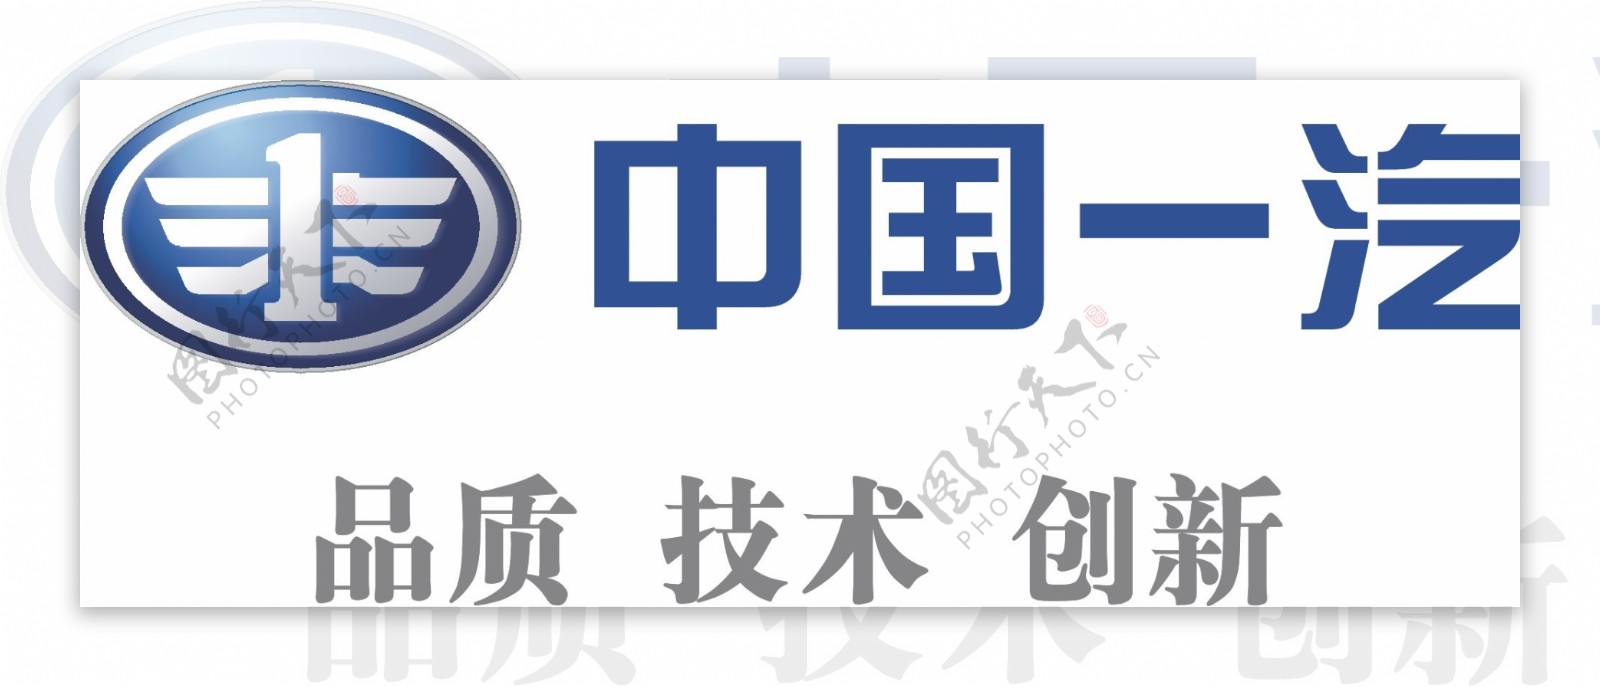 中国一汽汽车logo